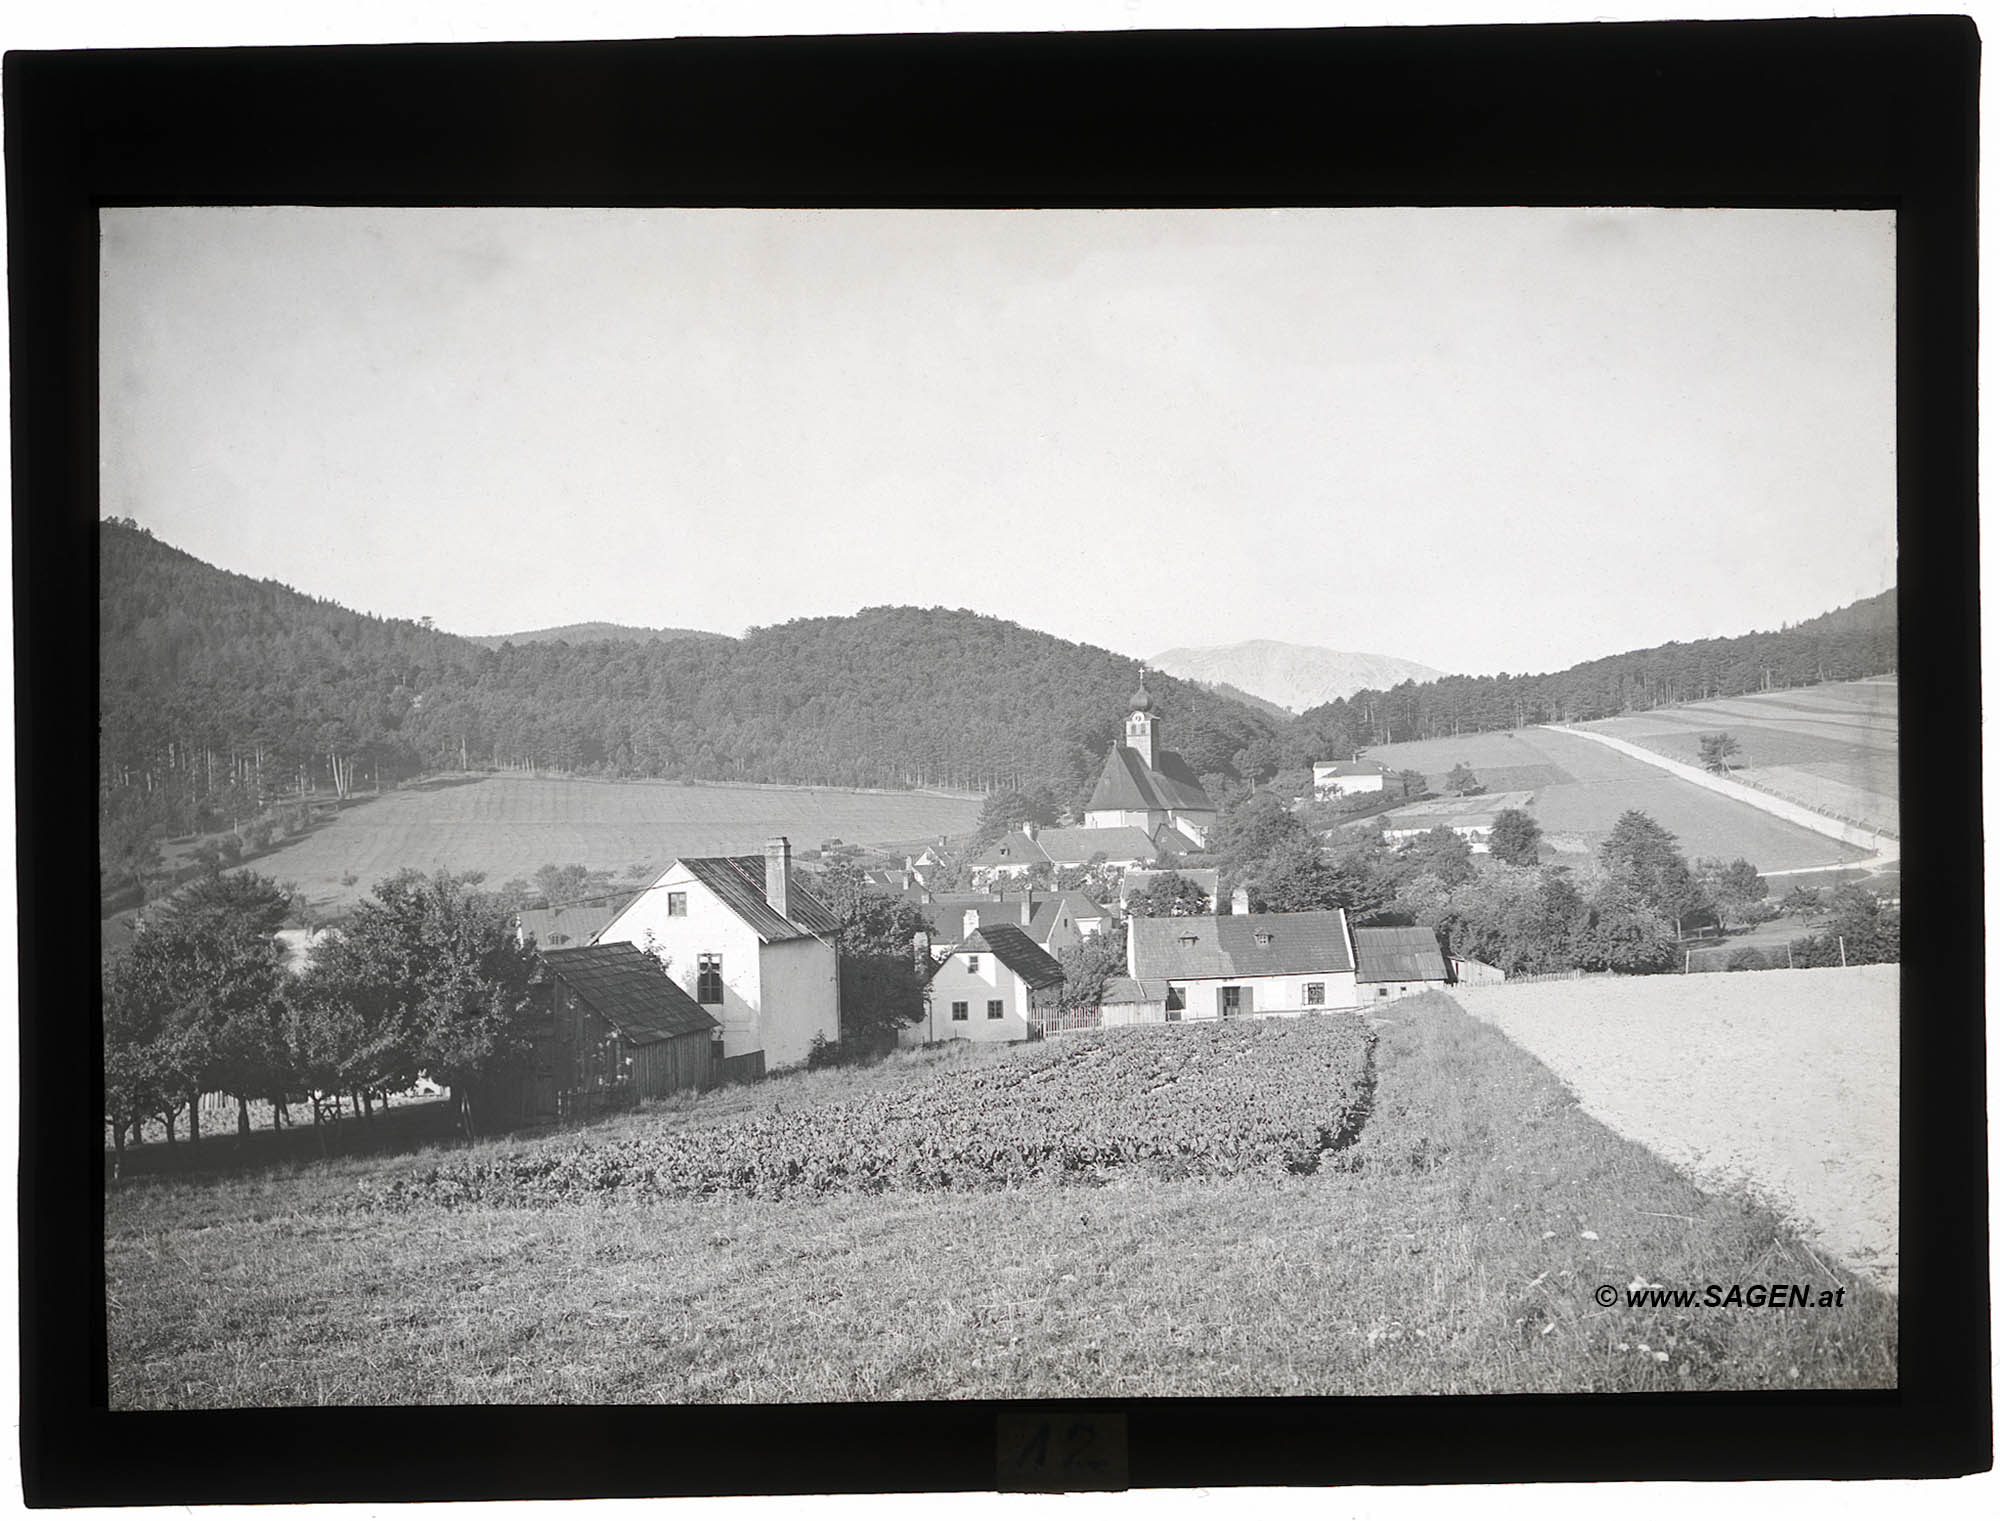 Grünbach am Schneeberg, im Hintergrund der Hochschneeberg